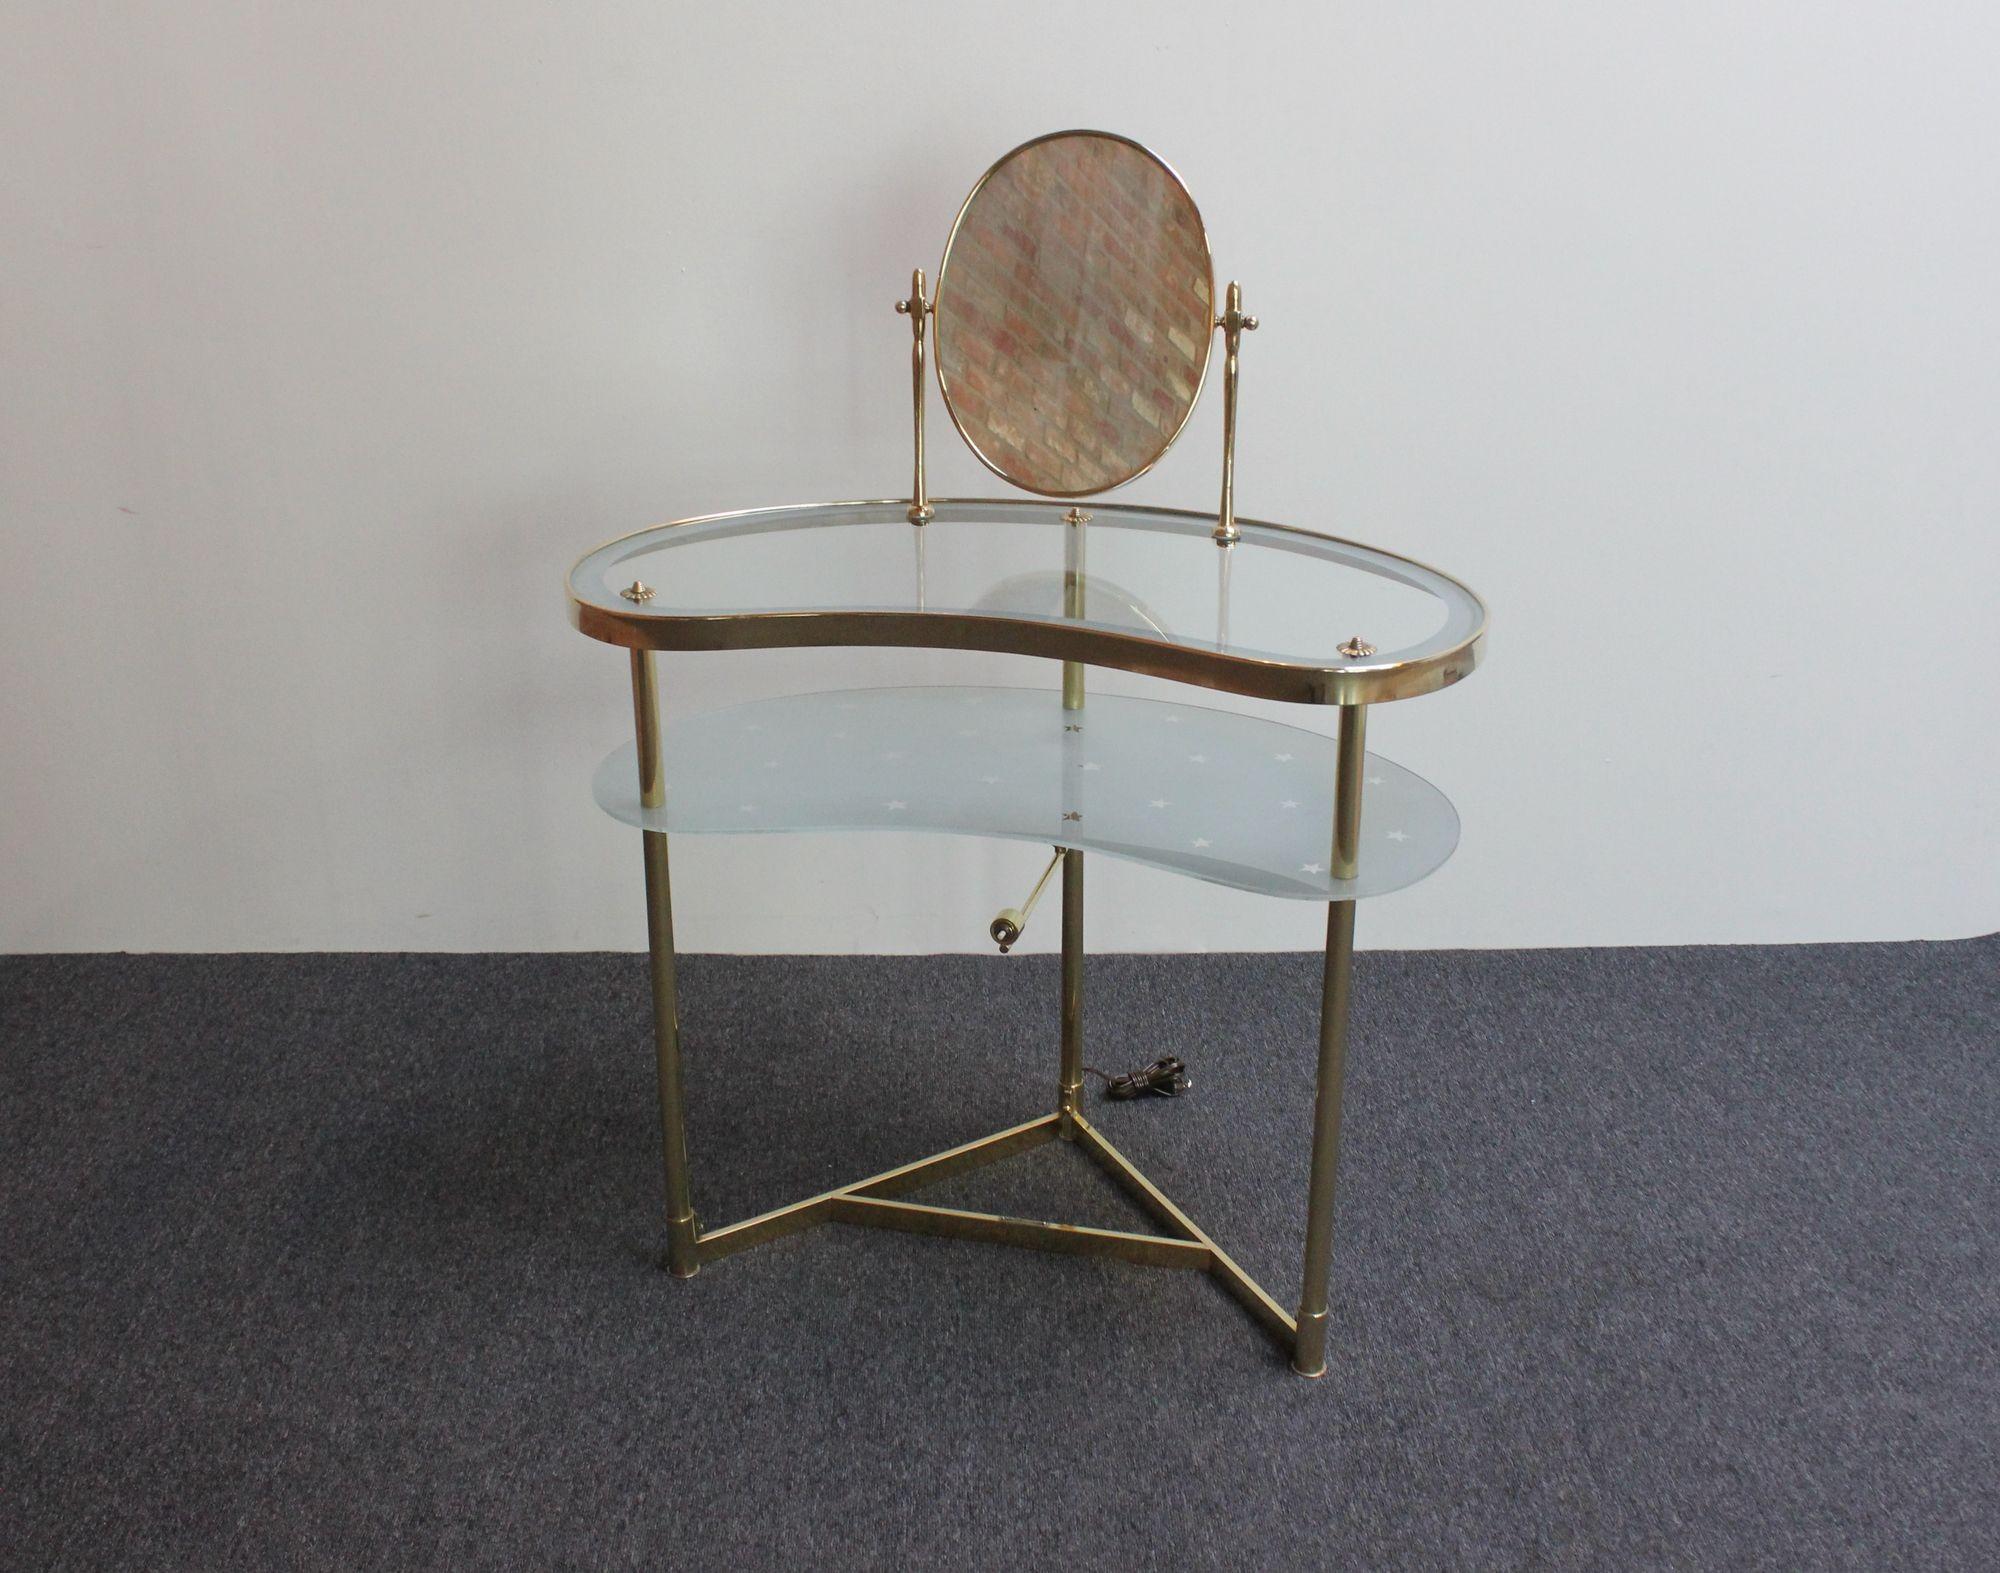 Élégante coiffeuse/lavabo avec éclairage, conçue par Luigi Brusotti (vers les années 1950, Italie).
Composé d'un miroir pivotant en laiton monté sur une table de toilette avec un plateau supérieur en verre transparent et un plateau inférieur en